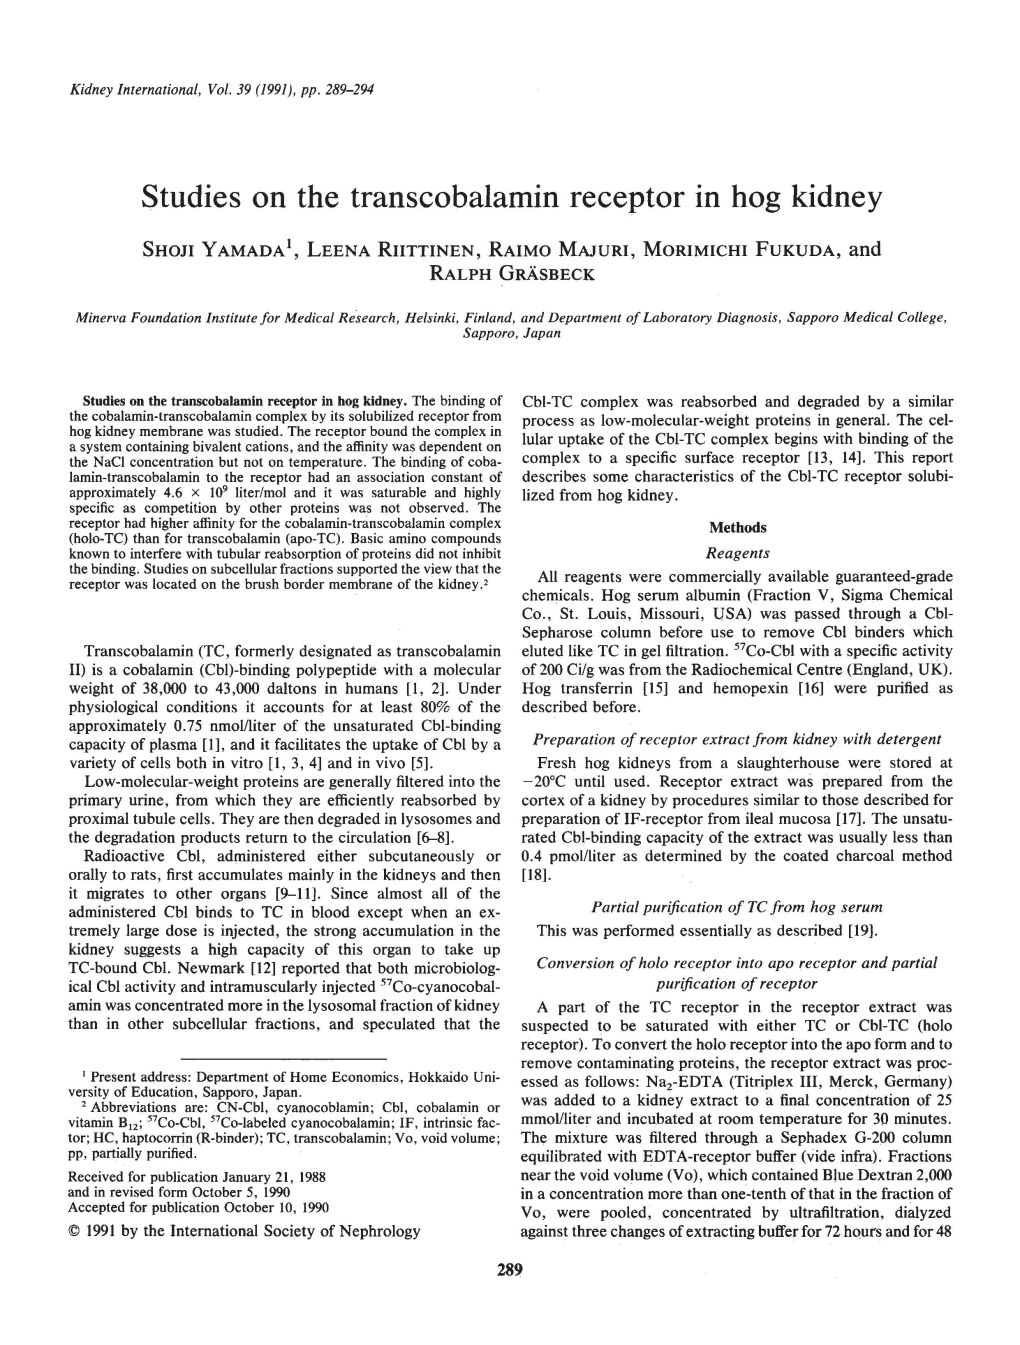 Studies on the Transcobalamin Receptor in Hog Kidney